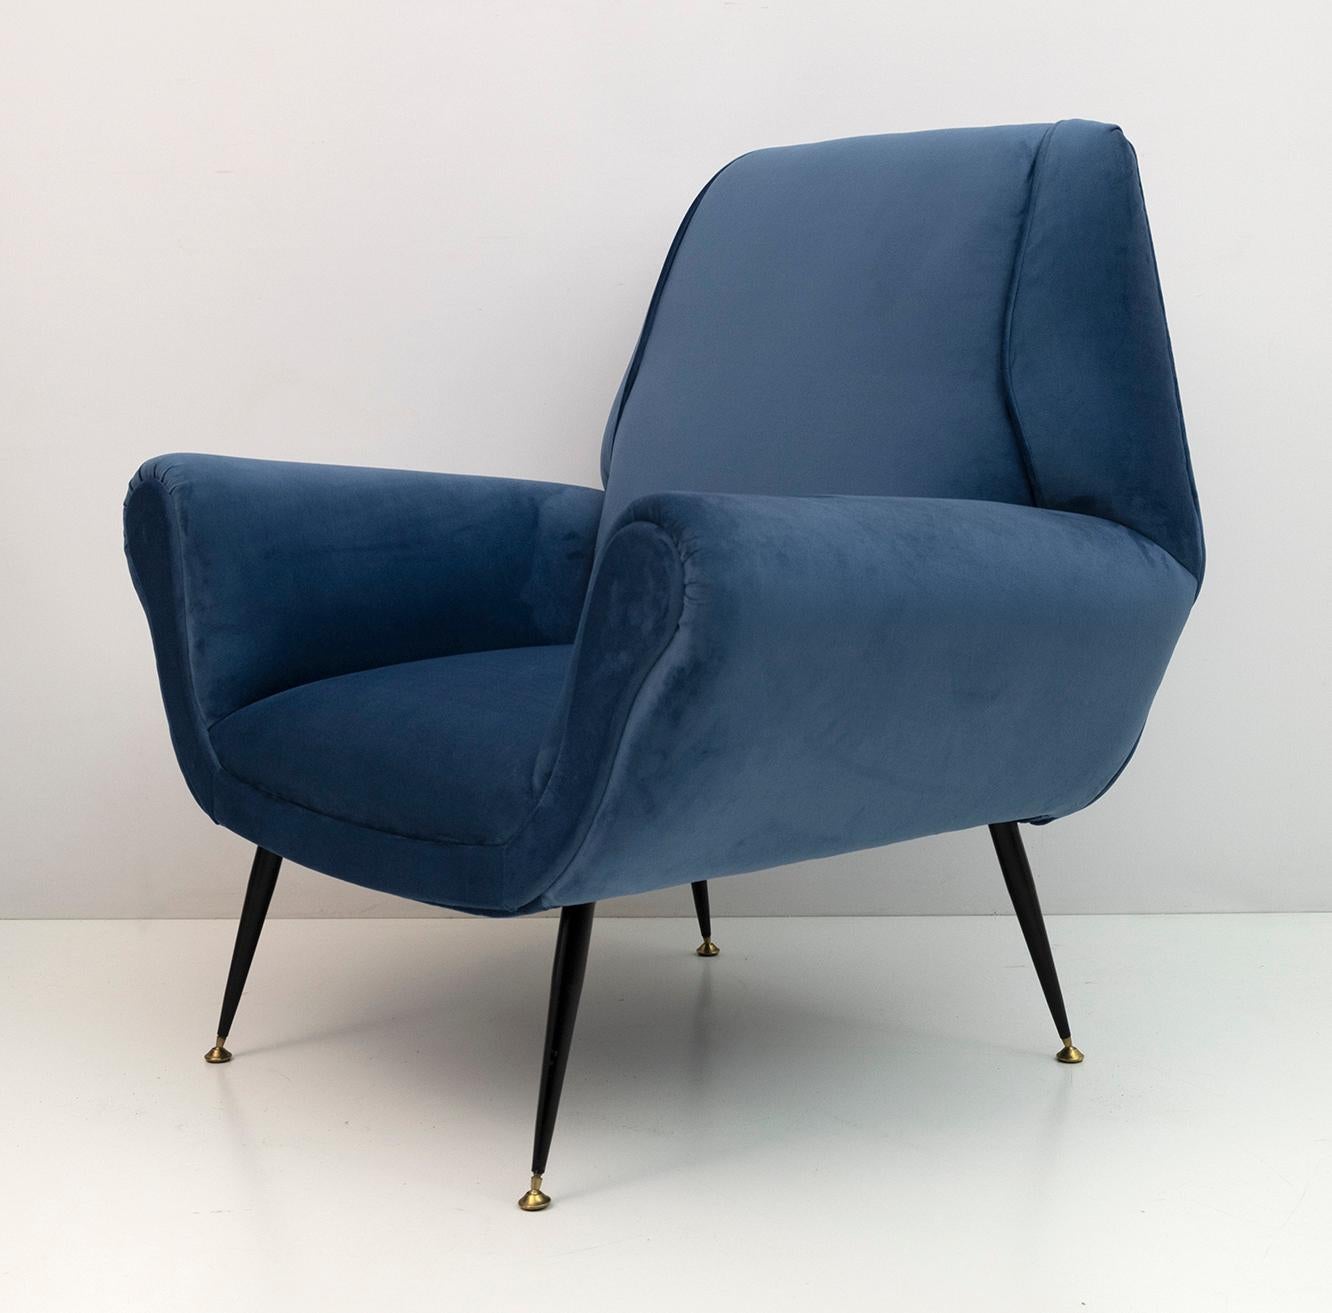 Mid-20th Century Gigi Radice Mid-Century Modern Italian Velvet Armchair for Minotti, 1950s